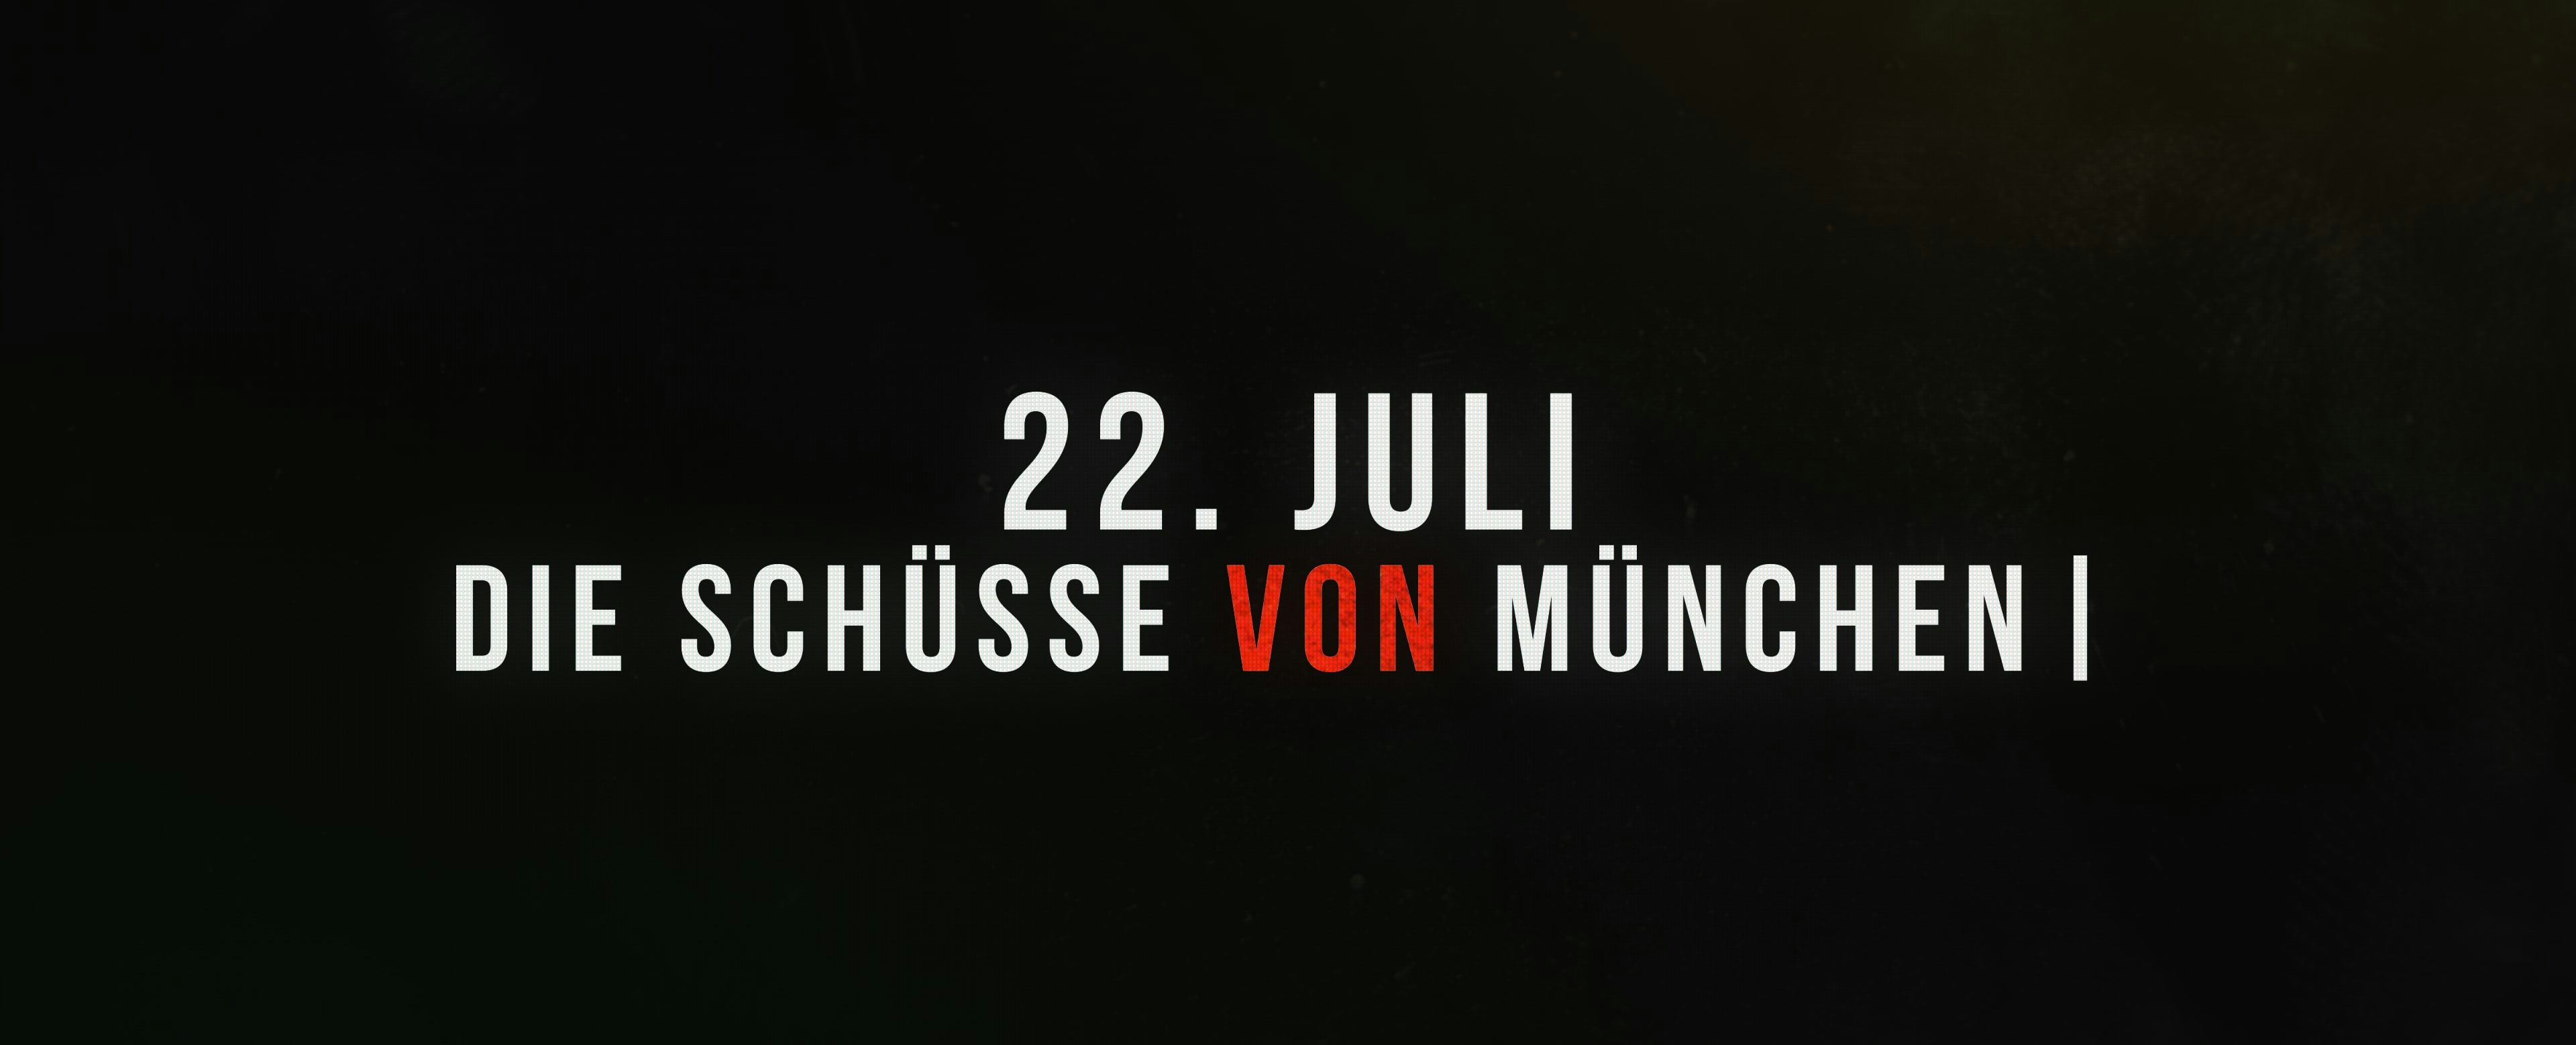 22. Juli - Die Schüsse von München  